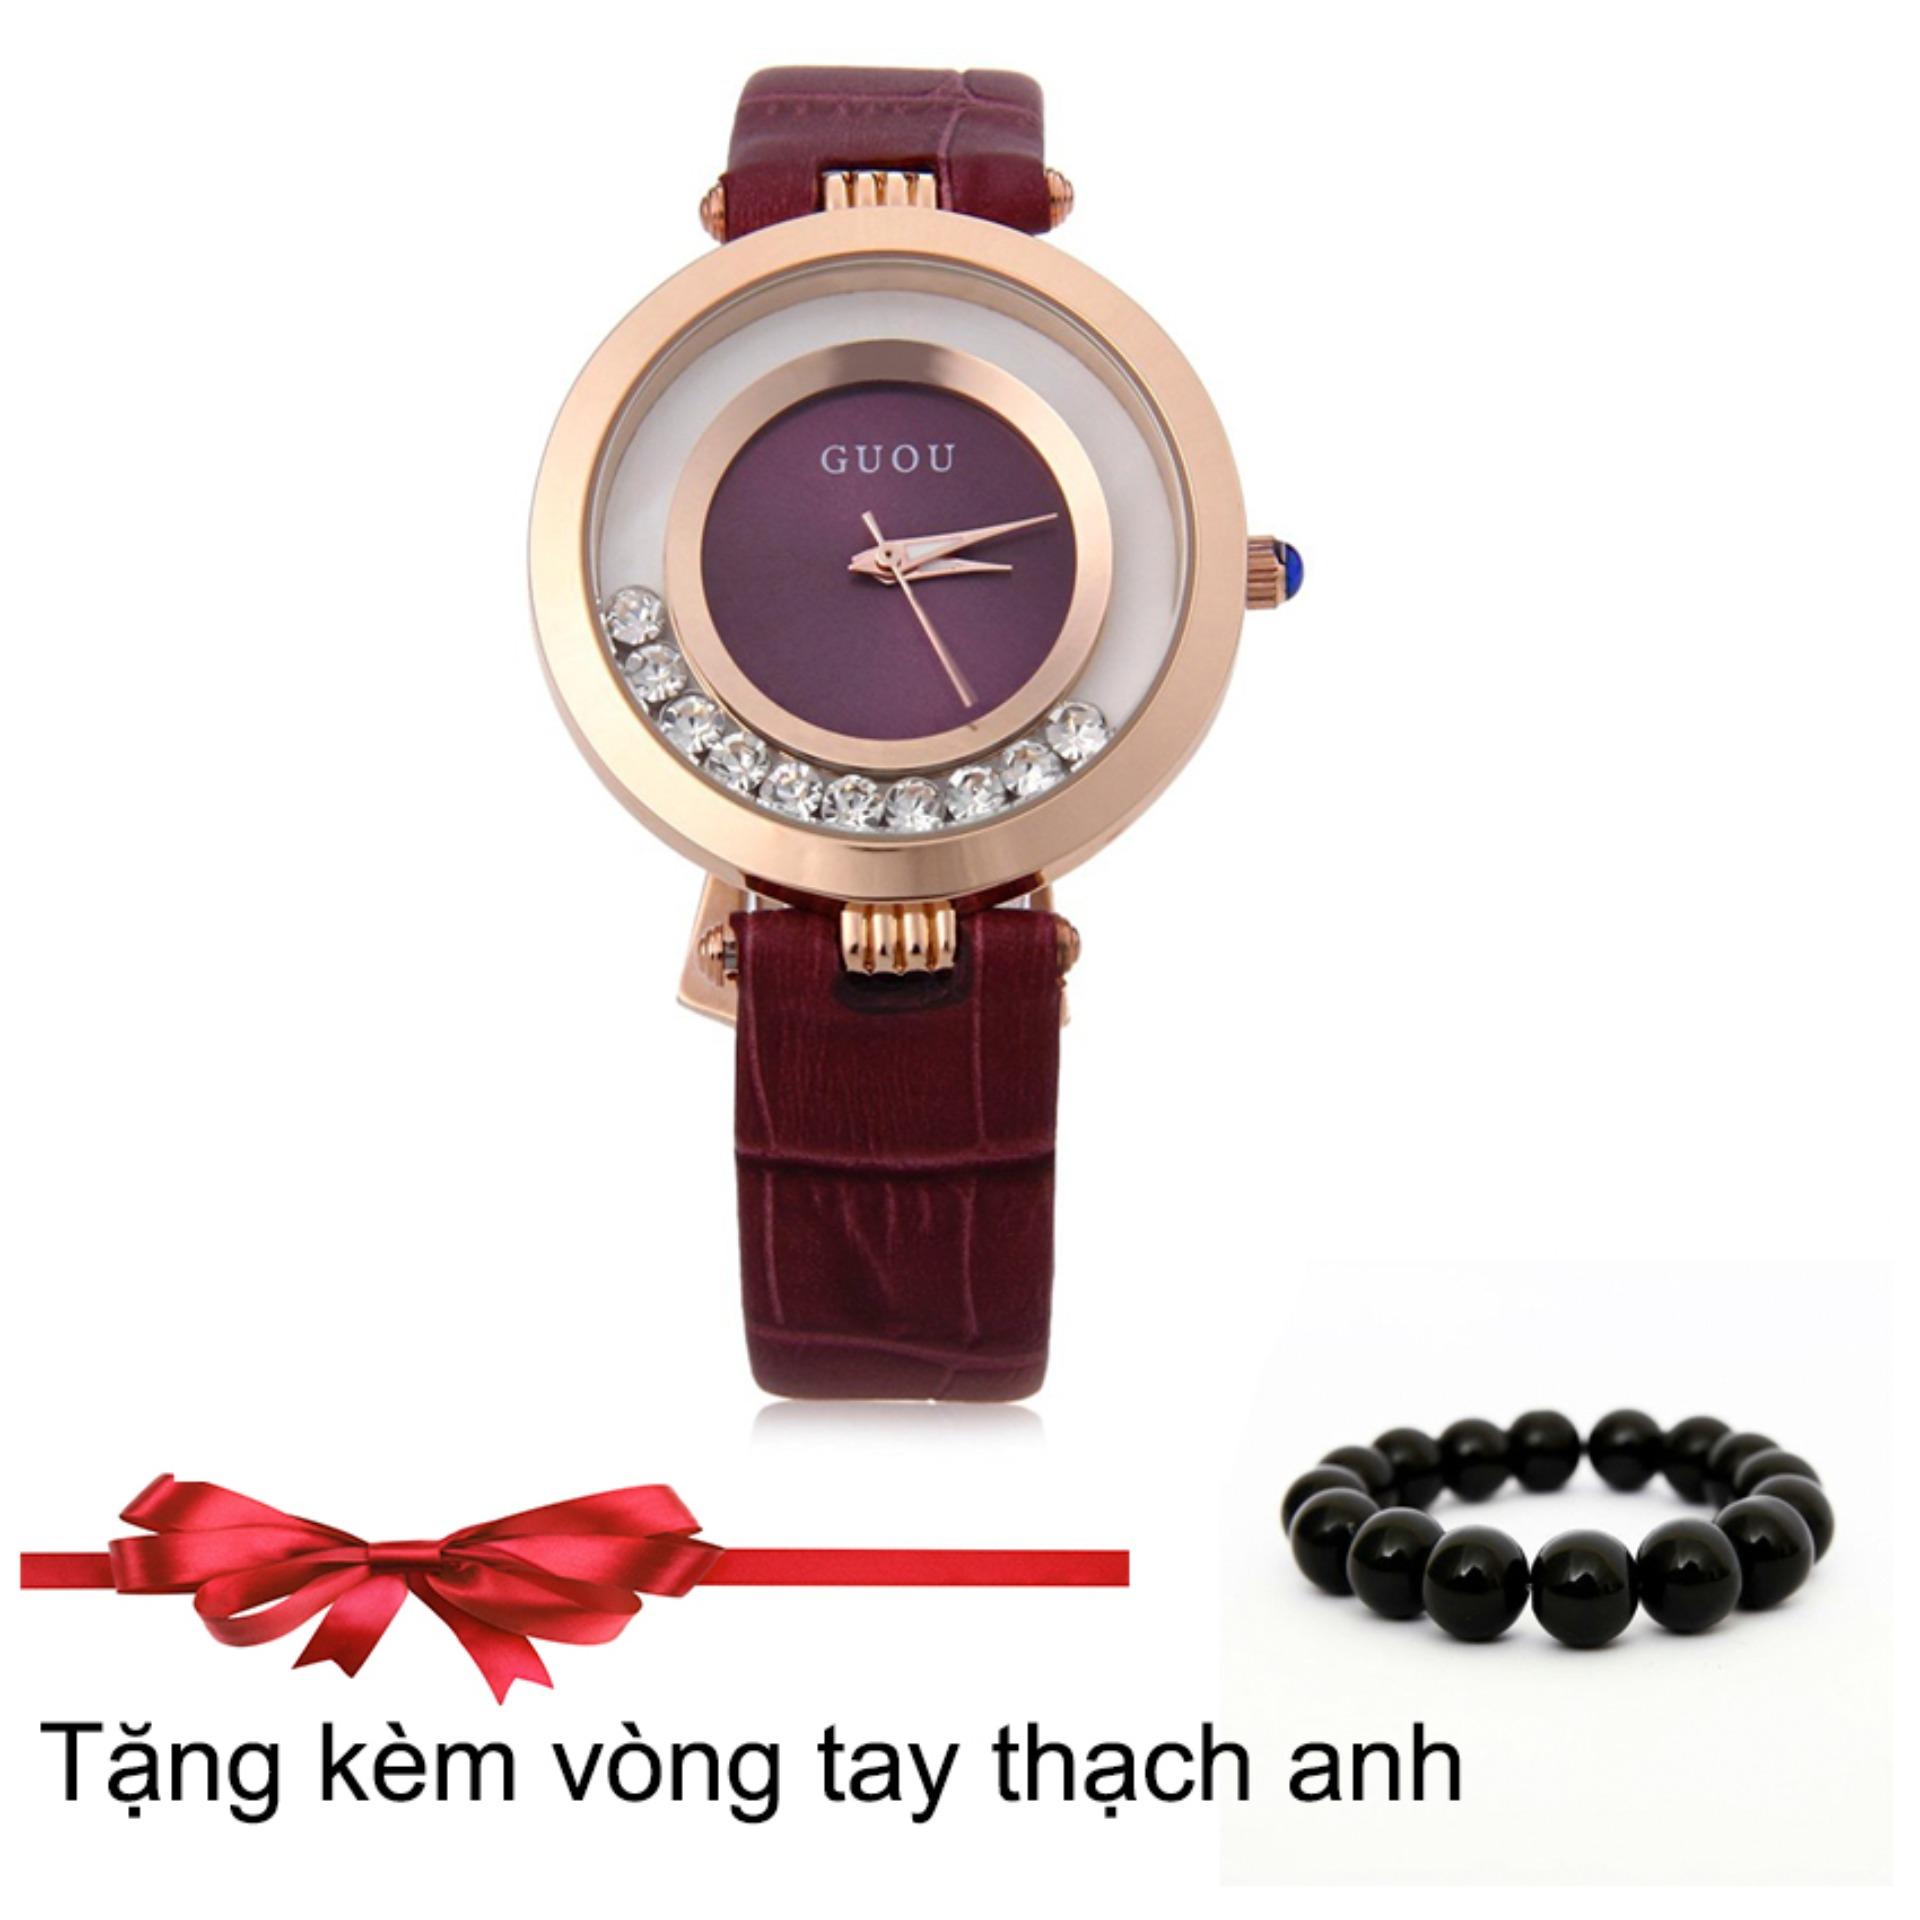 Đồng hồ nữ dây da Guou GU045 màu tím + Tặng kèm vòng tay thạch anh